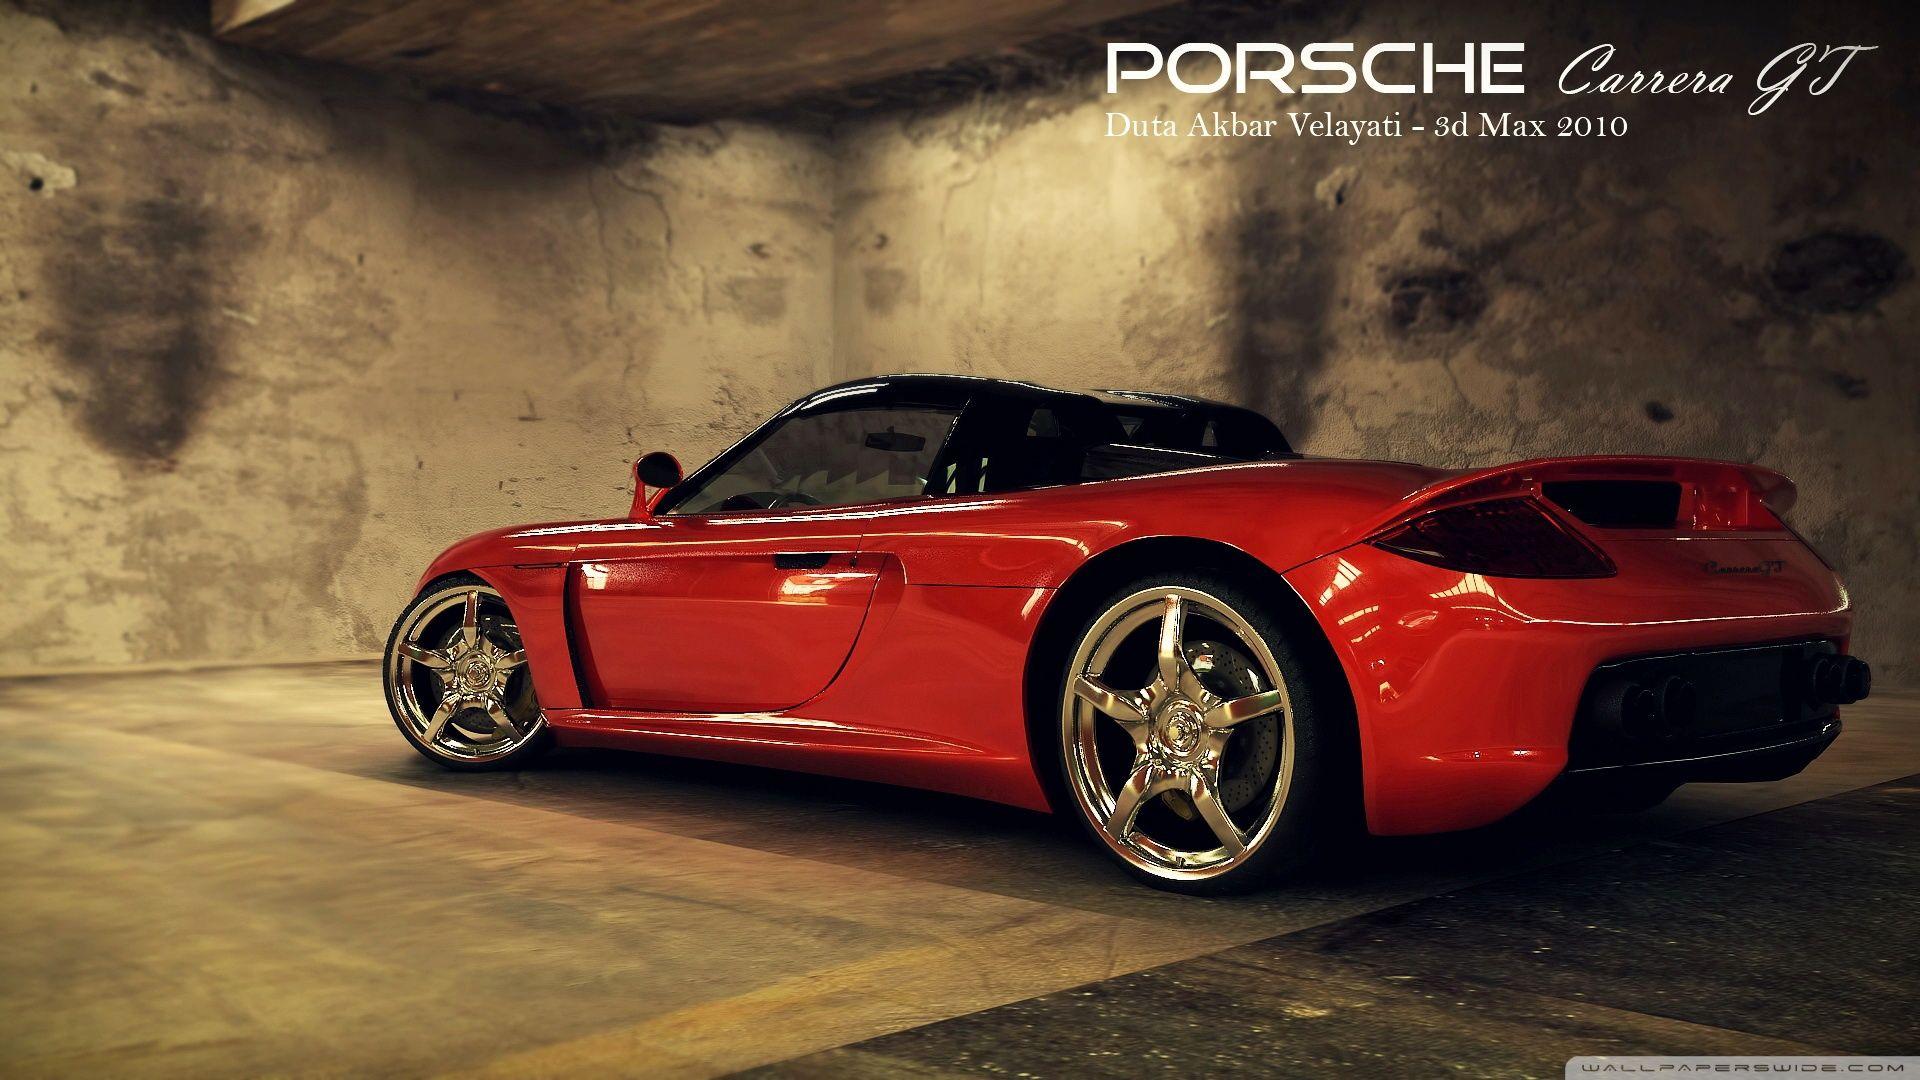 Porsche Carrera GT Wallpaper 16 X 1080